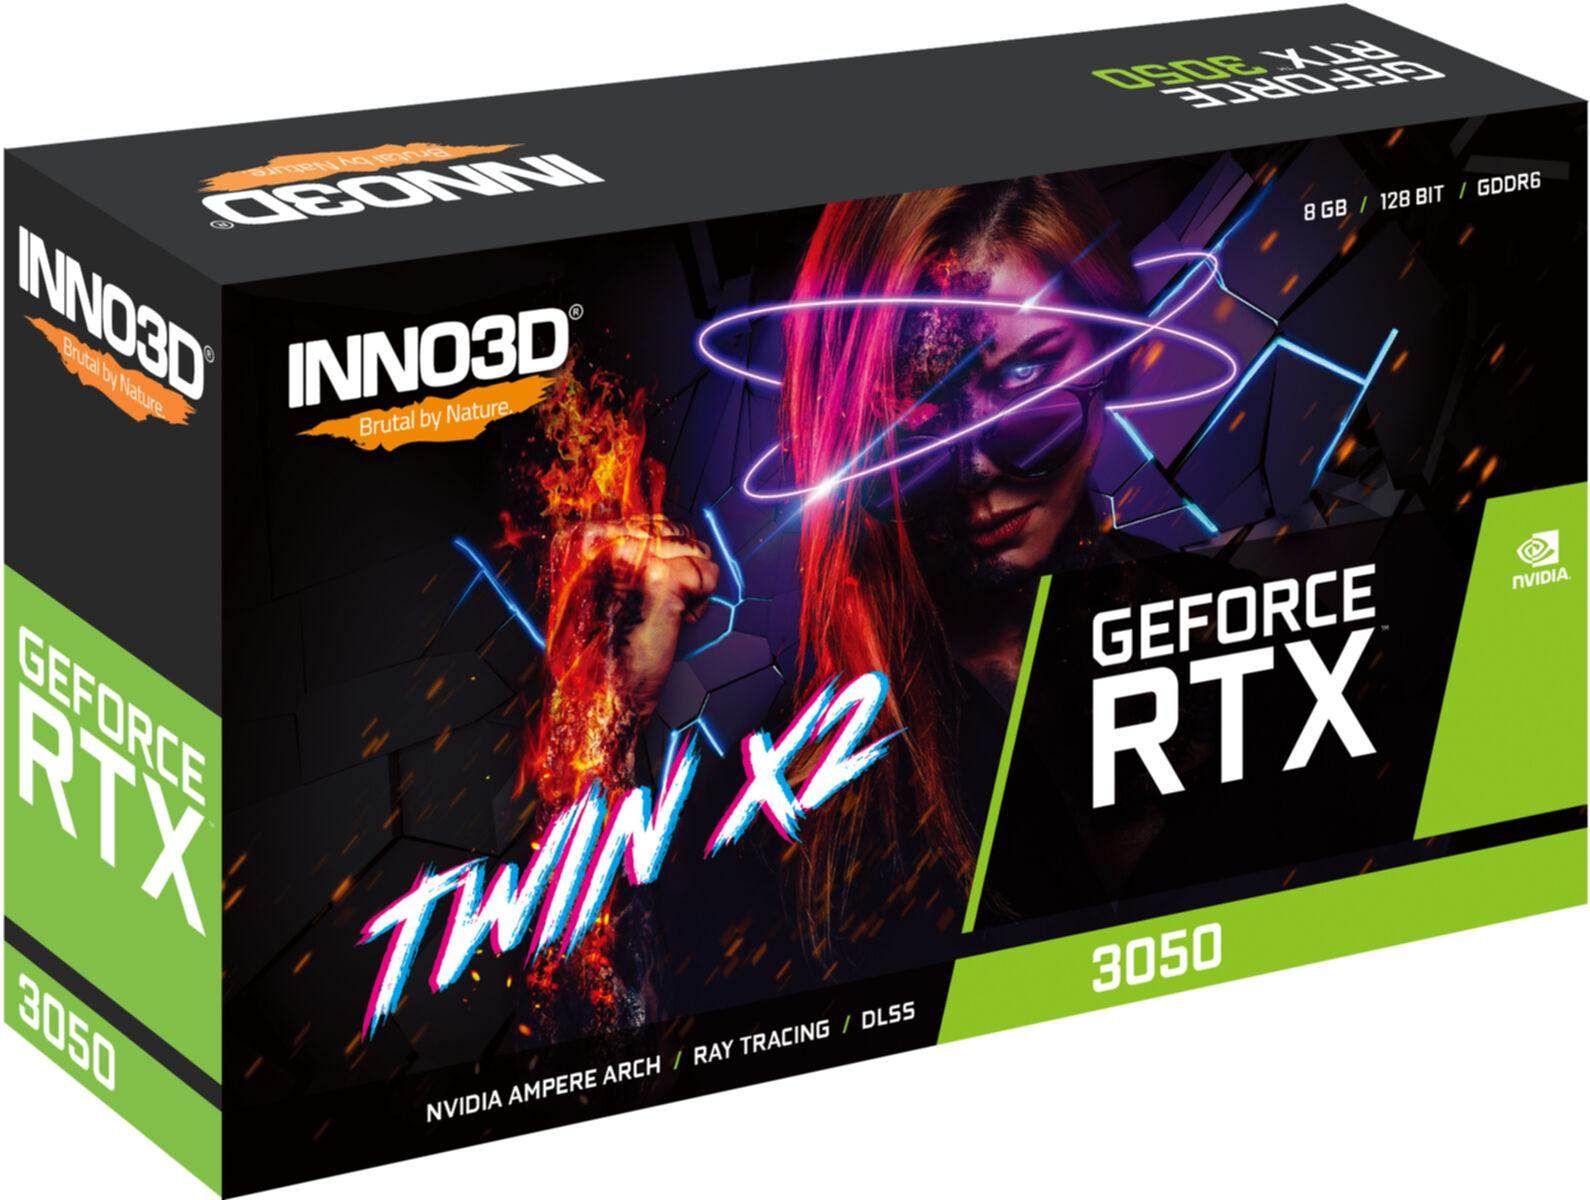 GeForce RTX X2 (NVIDIA, INNO3D Twin 3050 Grafikkarte)